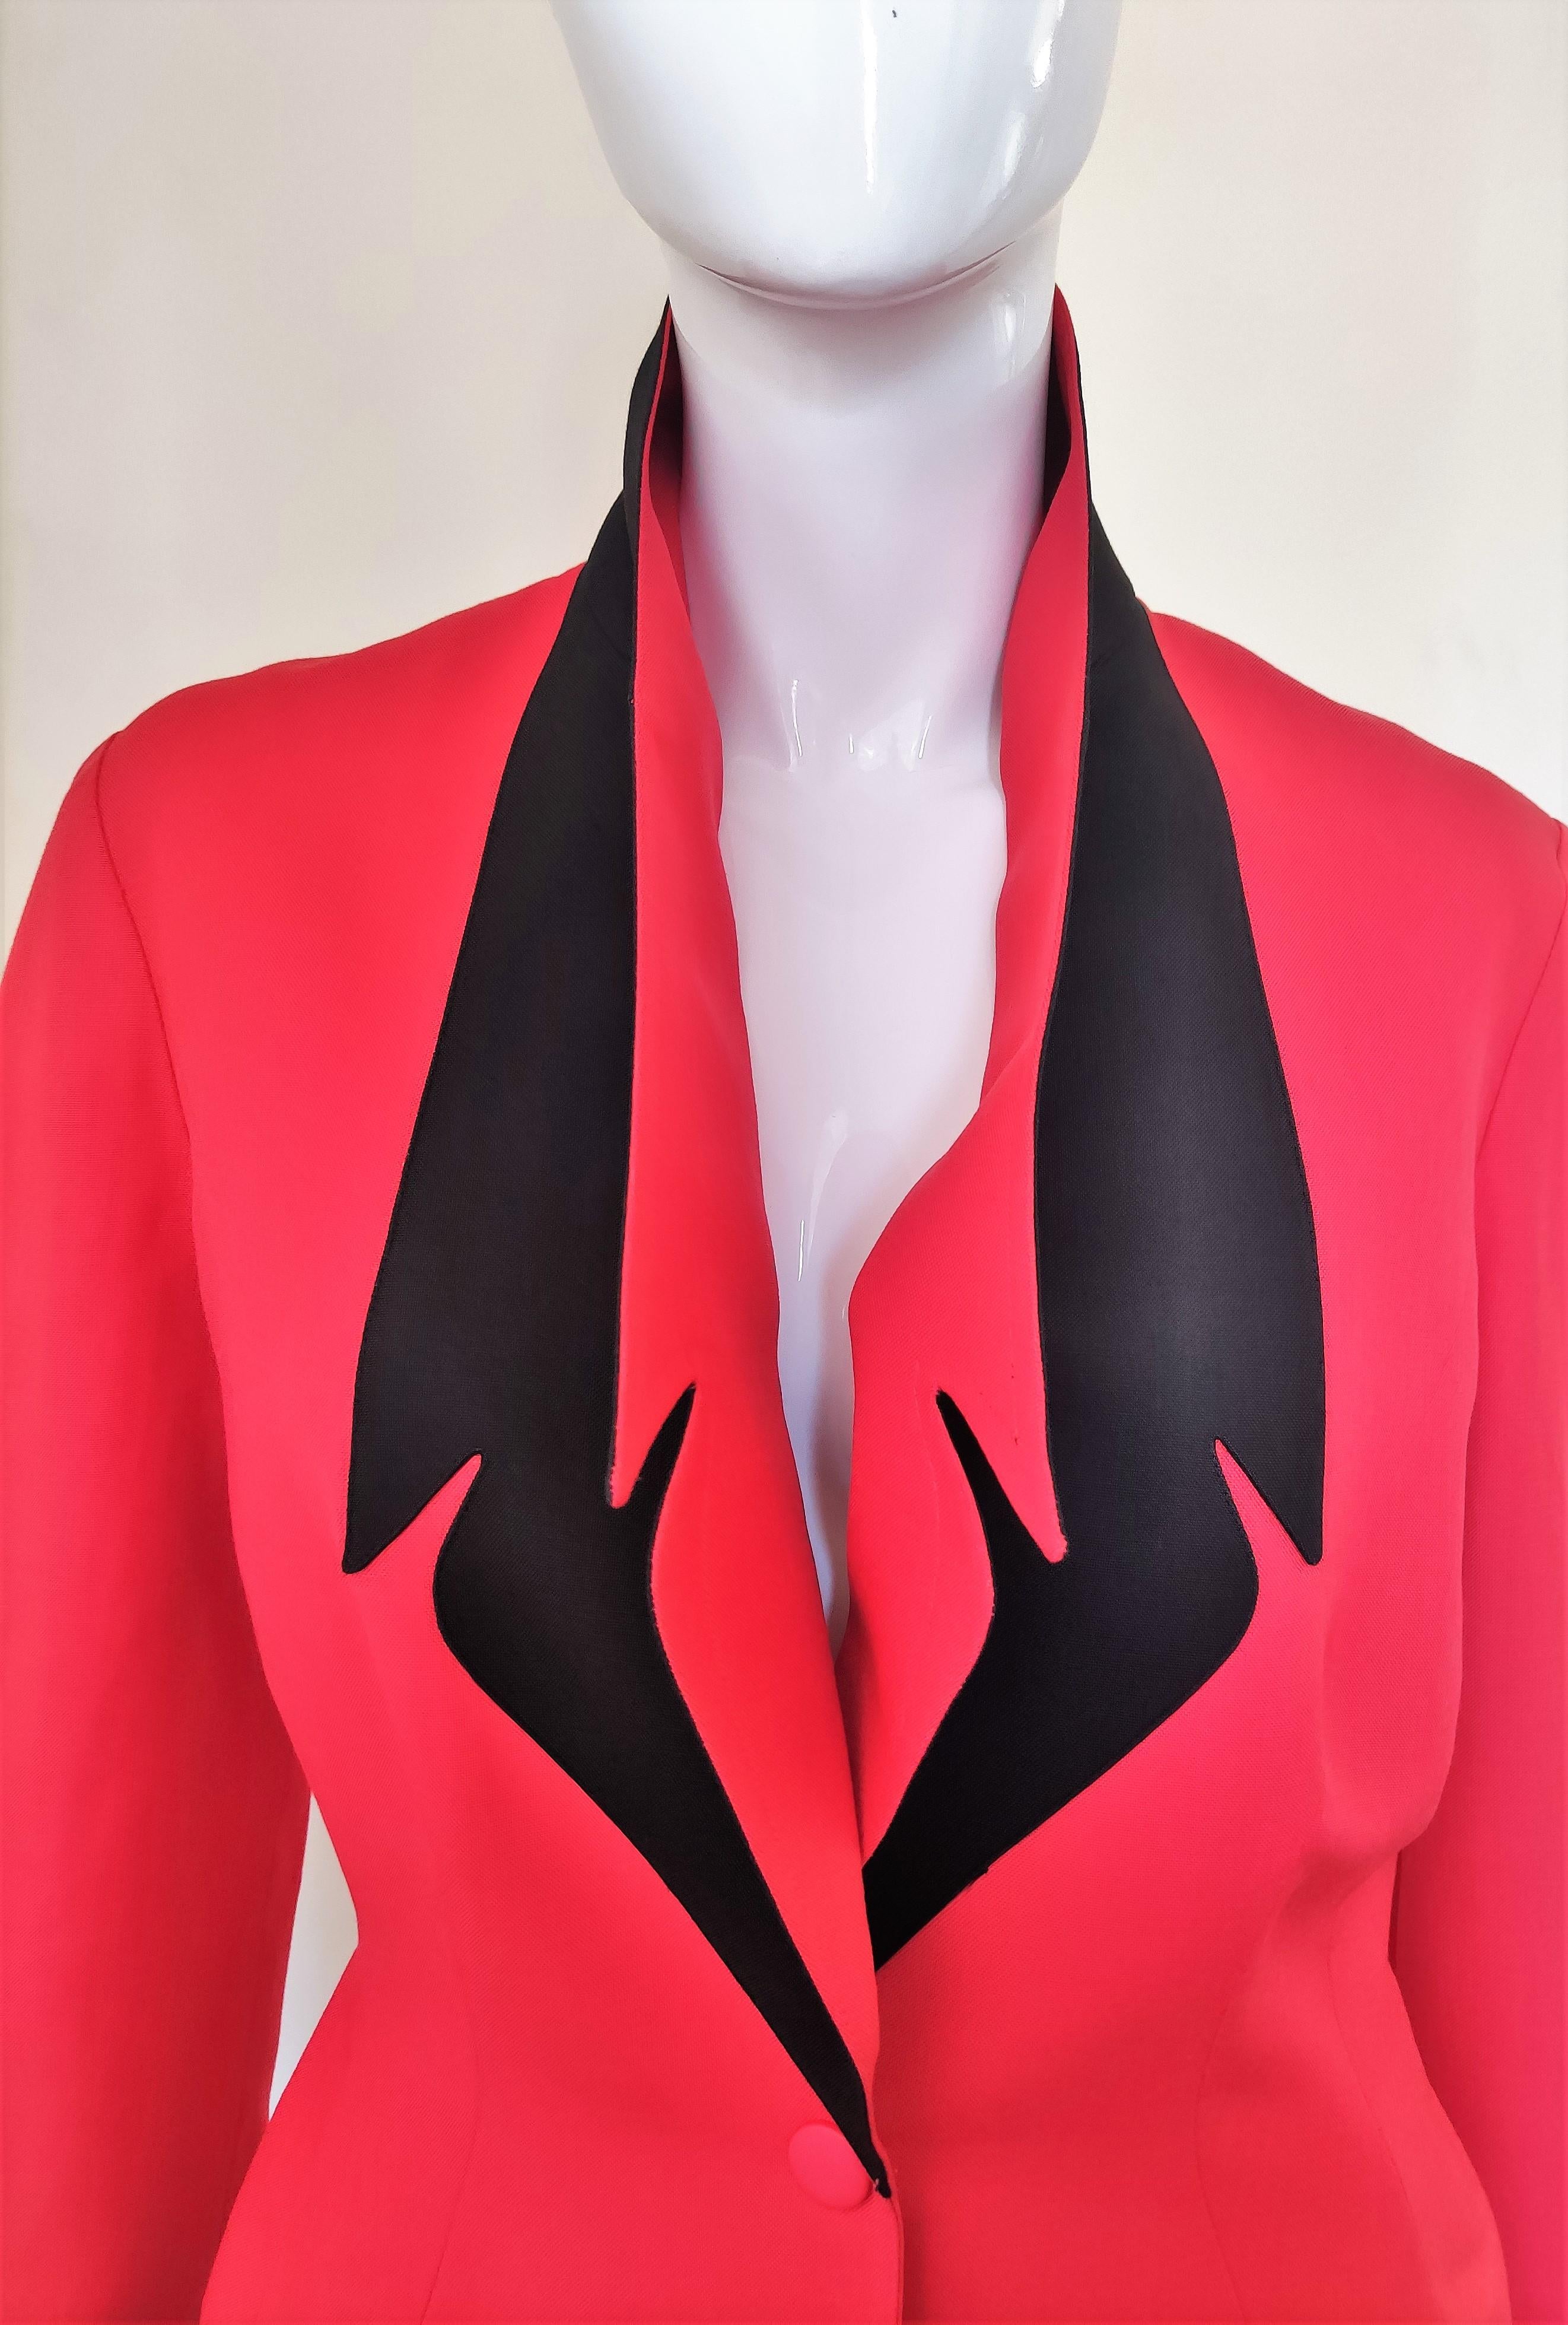 Thierry Mugler - Costume robe couture arc-en-ciel rouge, noire et à taille Vampire Wasp Excellent état - En vente à PARIS, FR